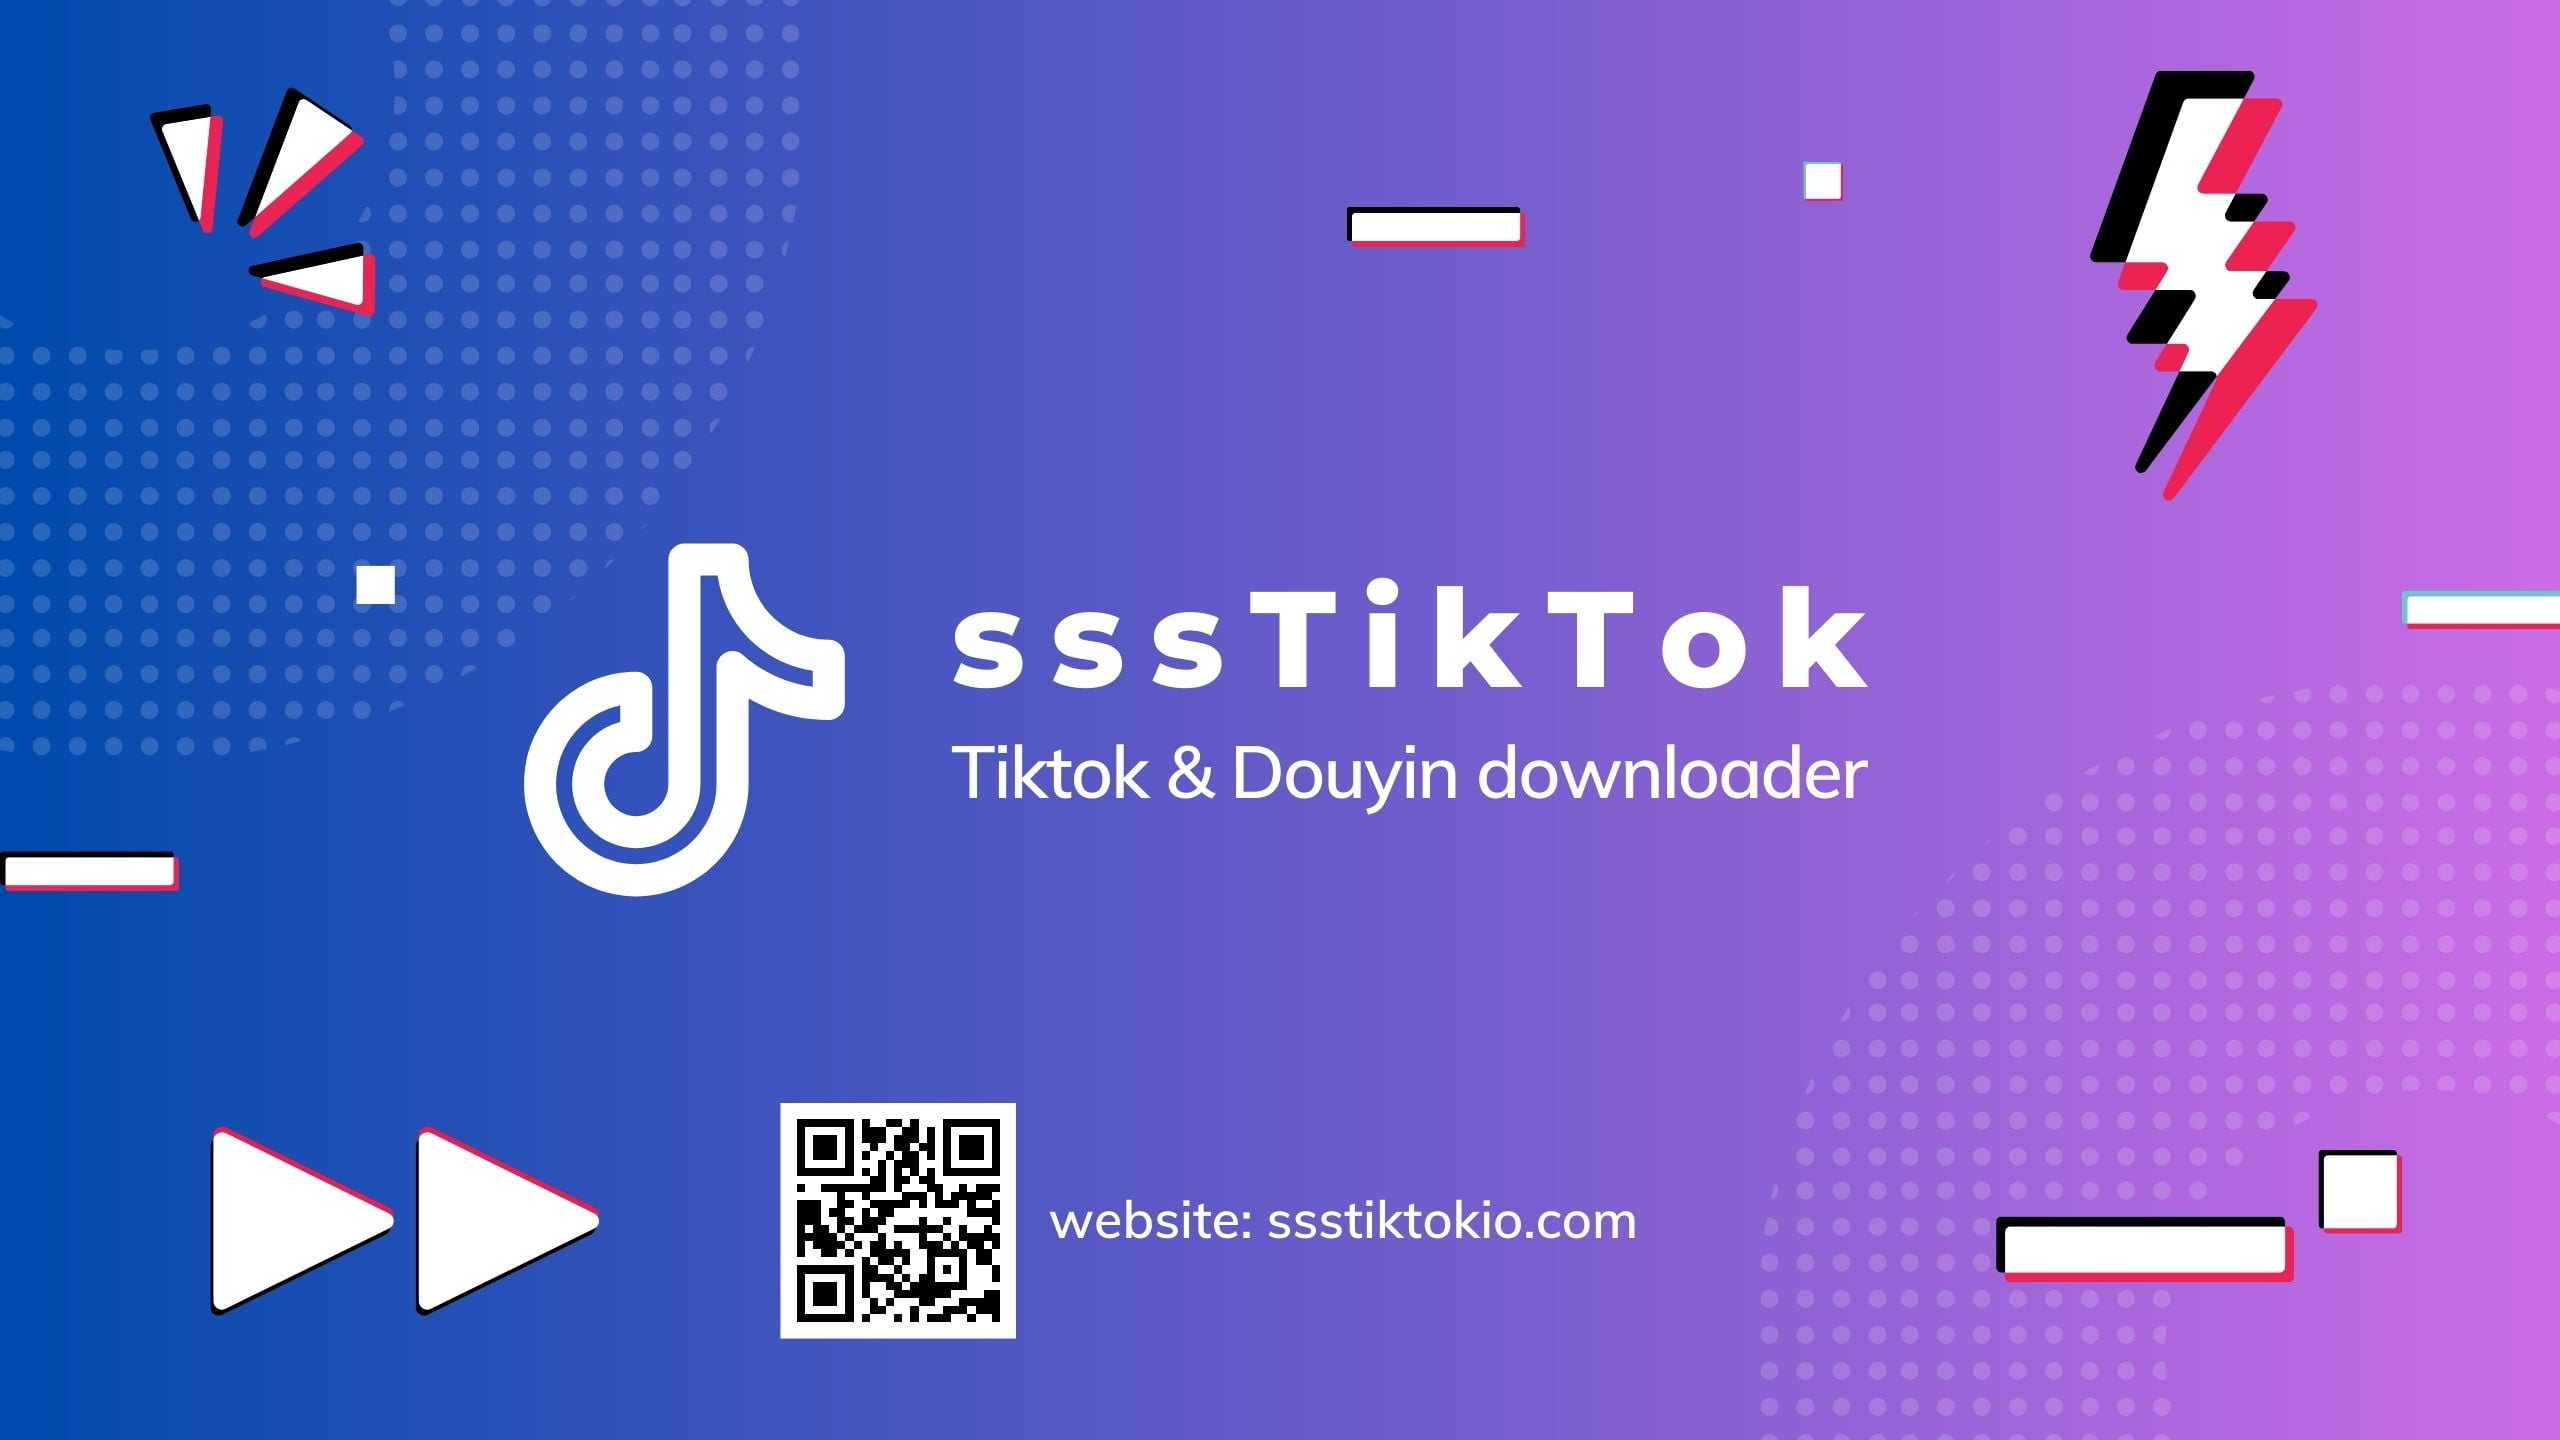 sssTiktok - Tiktok Downloader bez znaku wodnego